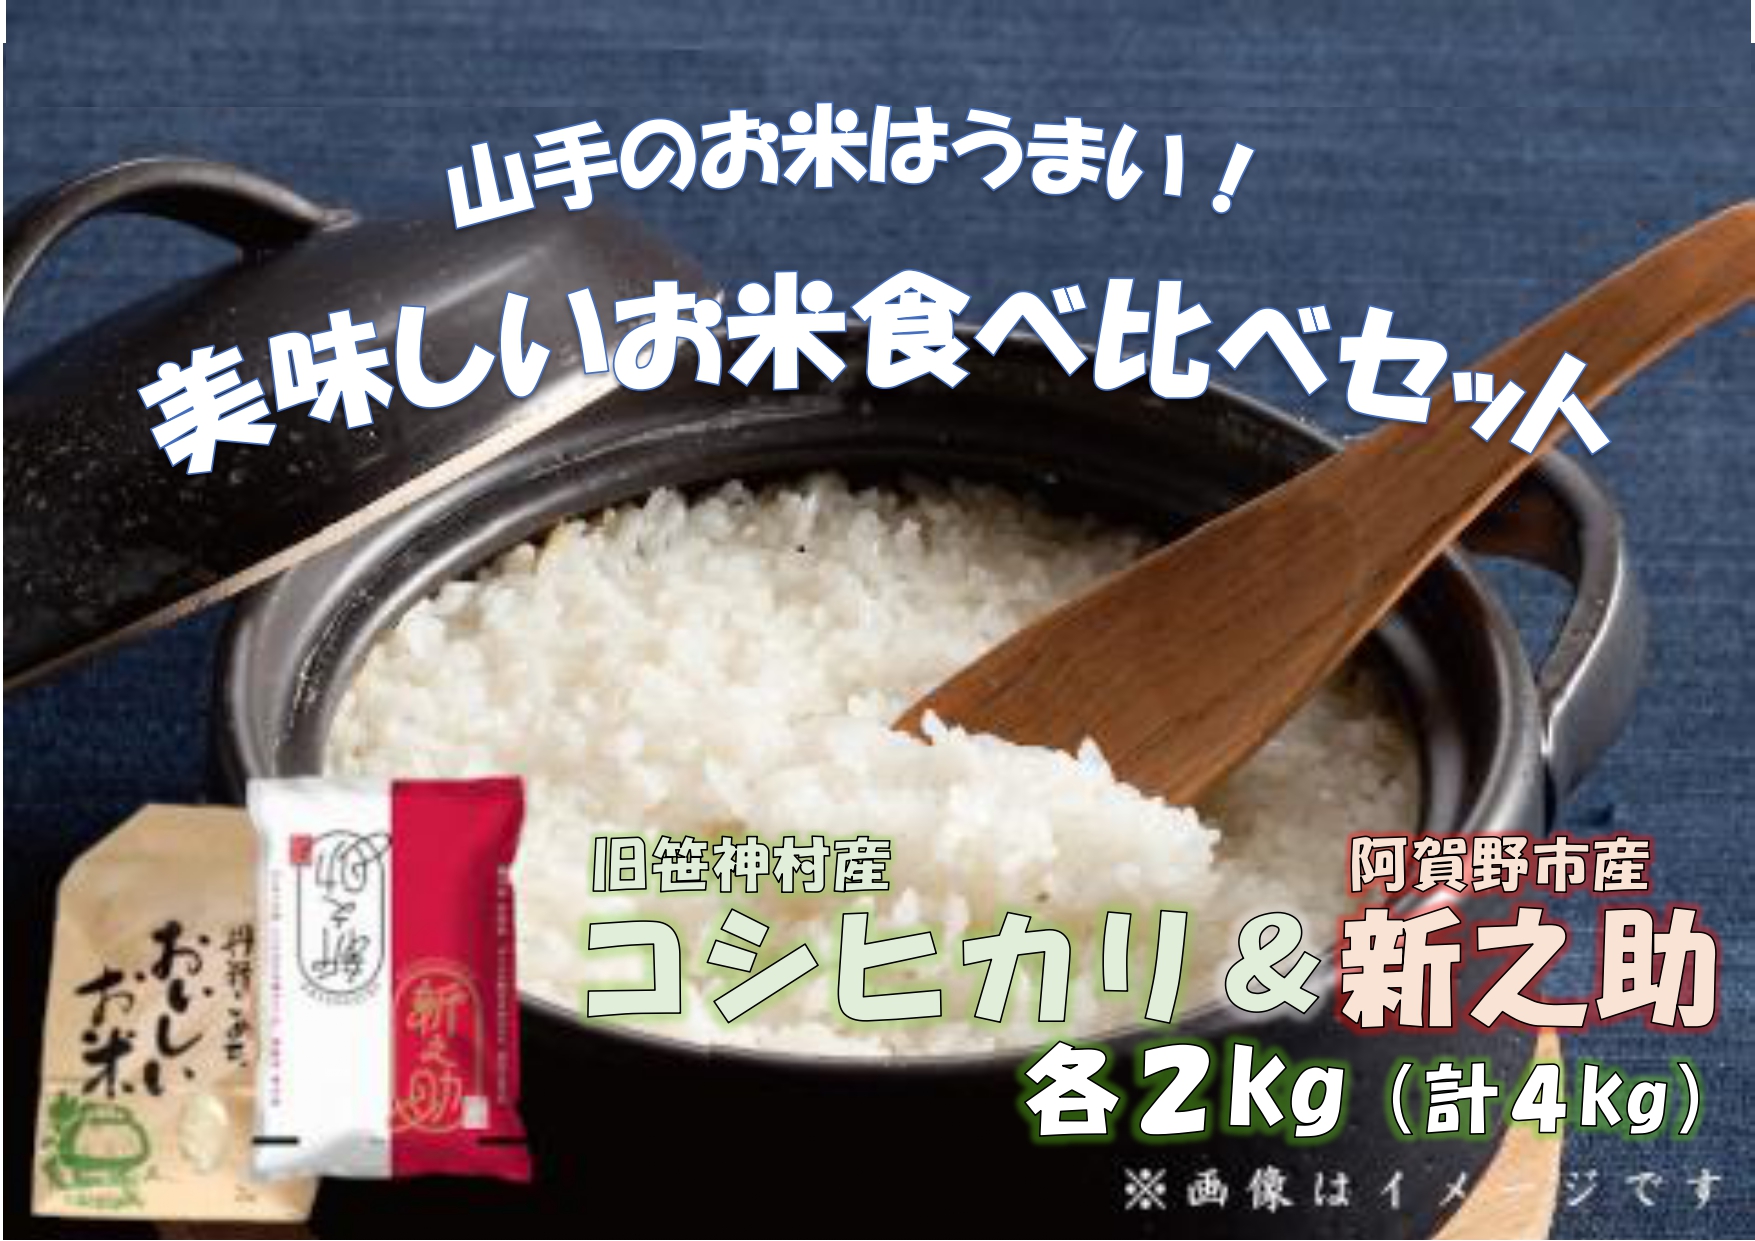 旧笹神村産コシヒカリ 2kg&新之助 2kg (美味しいお米食べ比べセット) 1Q09009